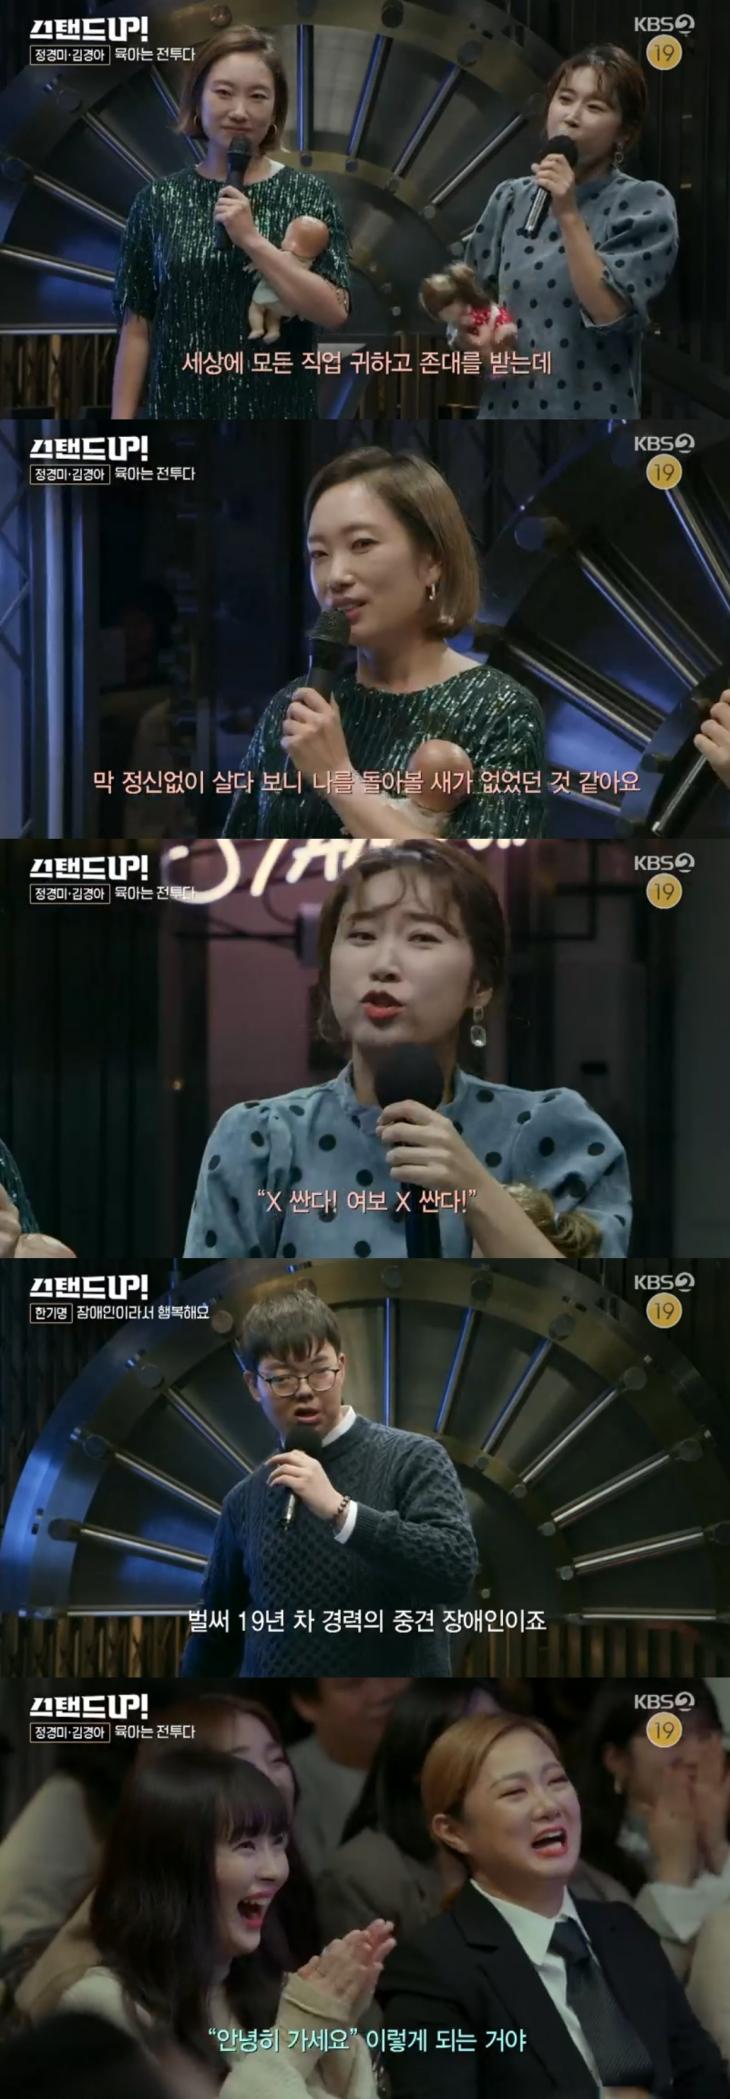 KBS2 예능프로그램 '스탠드업'